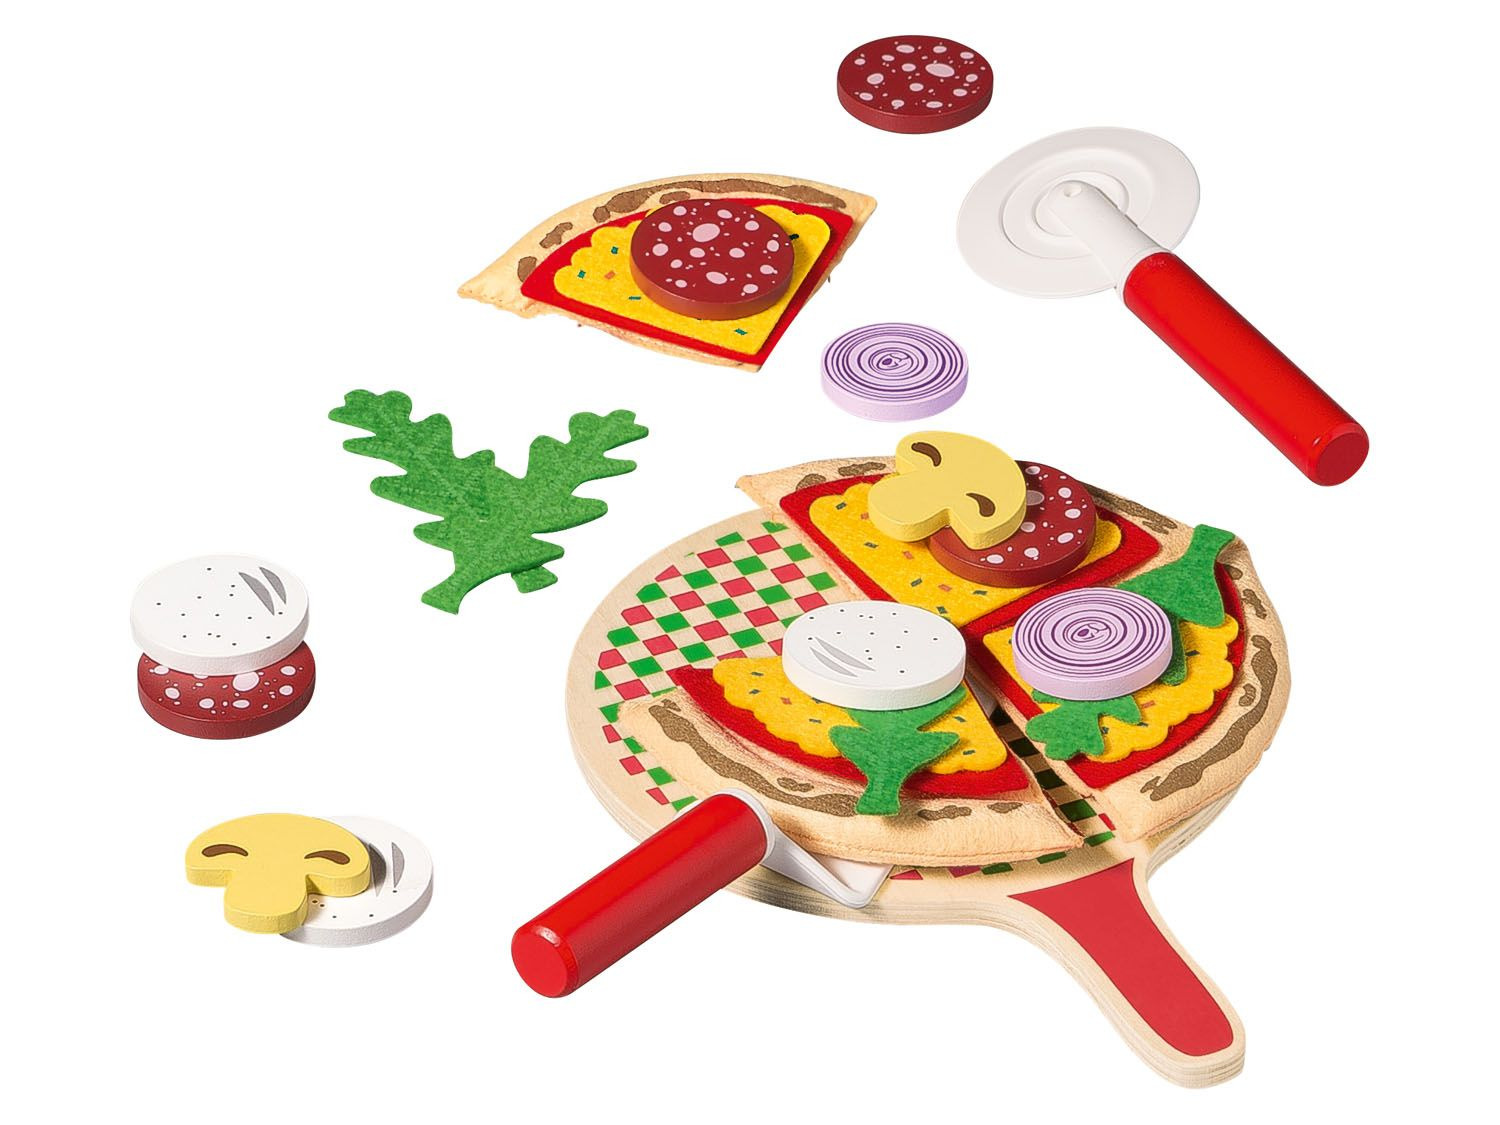 Neerduwen omverwerping Overeenkomend Playtive Pizza-set online kopen op Lidl.be